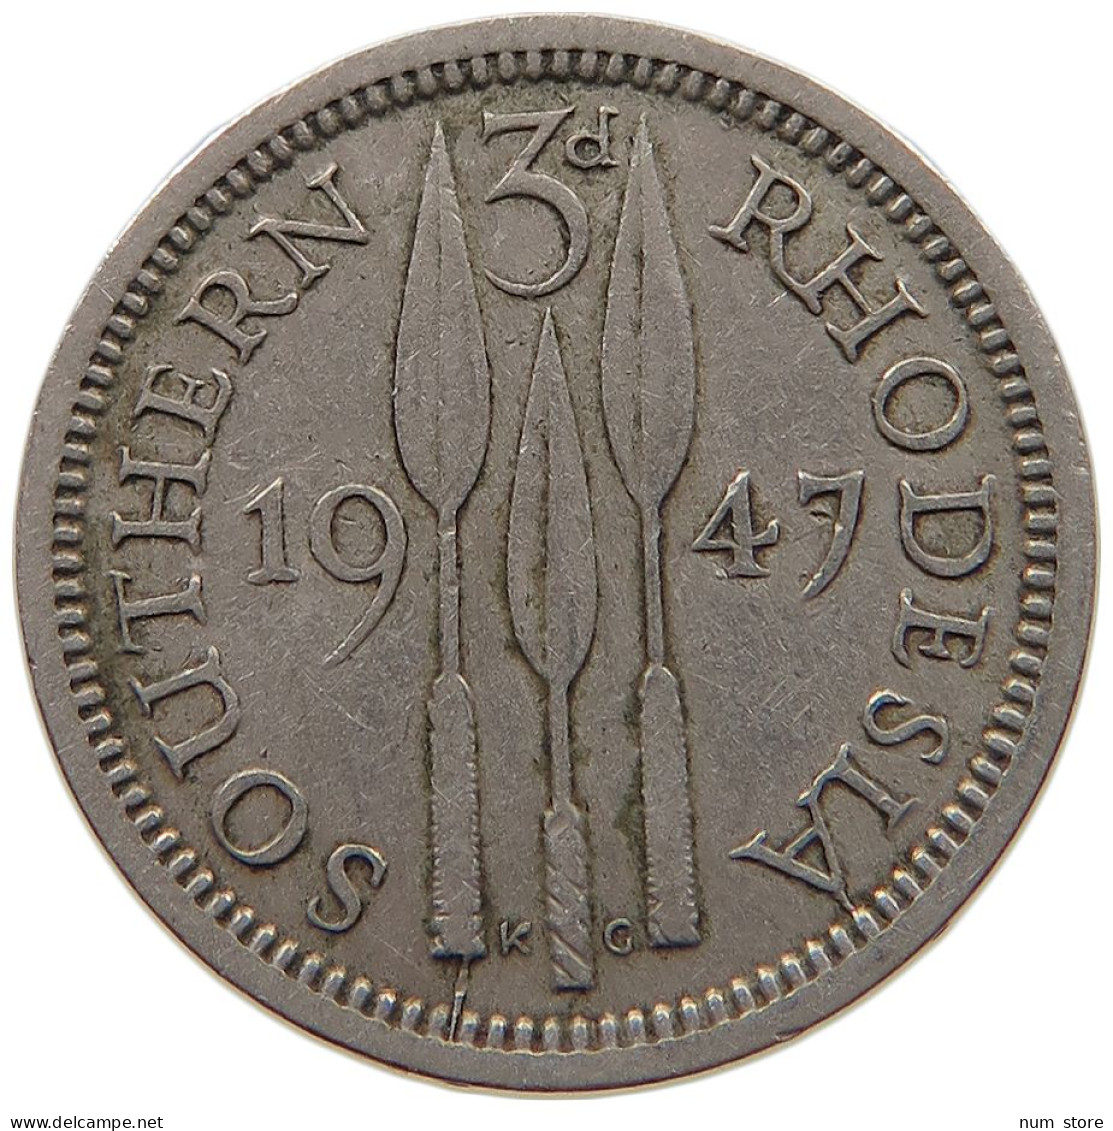 SOUTHERN RHODESIA 3 PENCE 1947 George VI. (1936-1952) #c021 0309 - Rhodesien